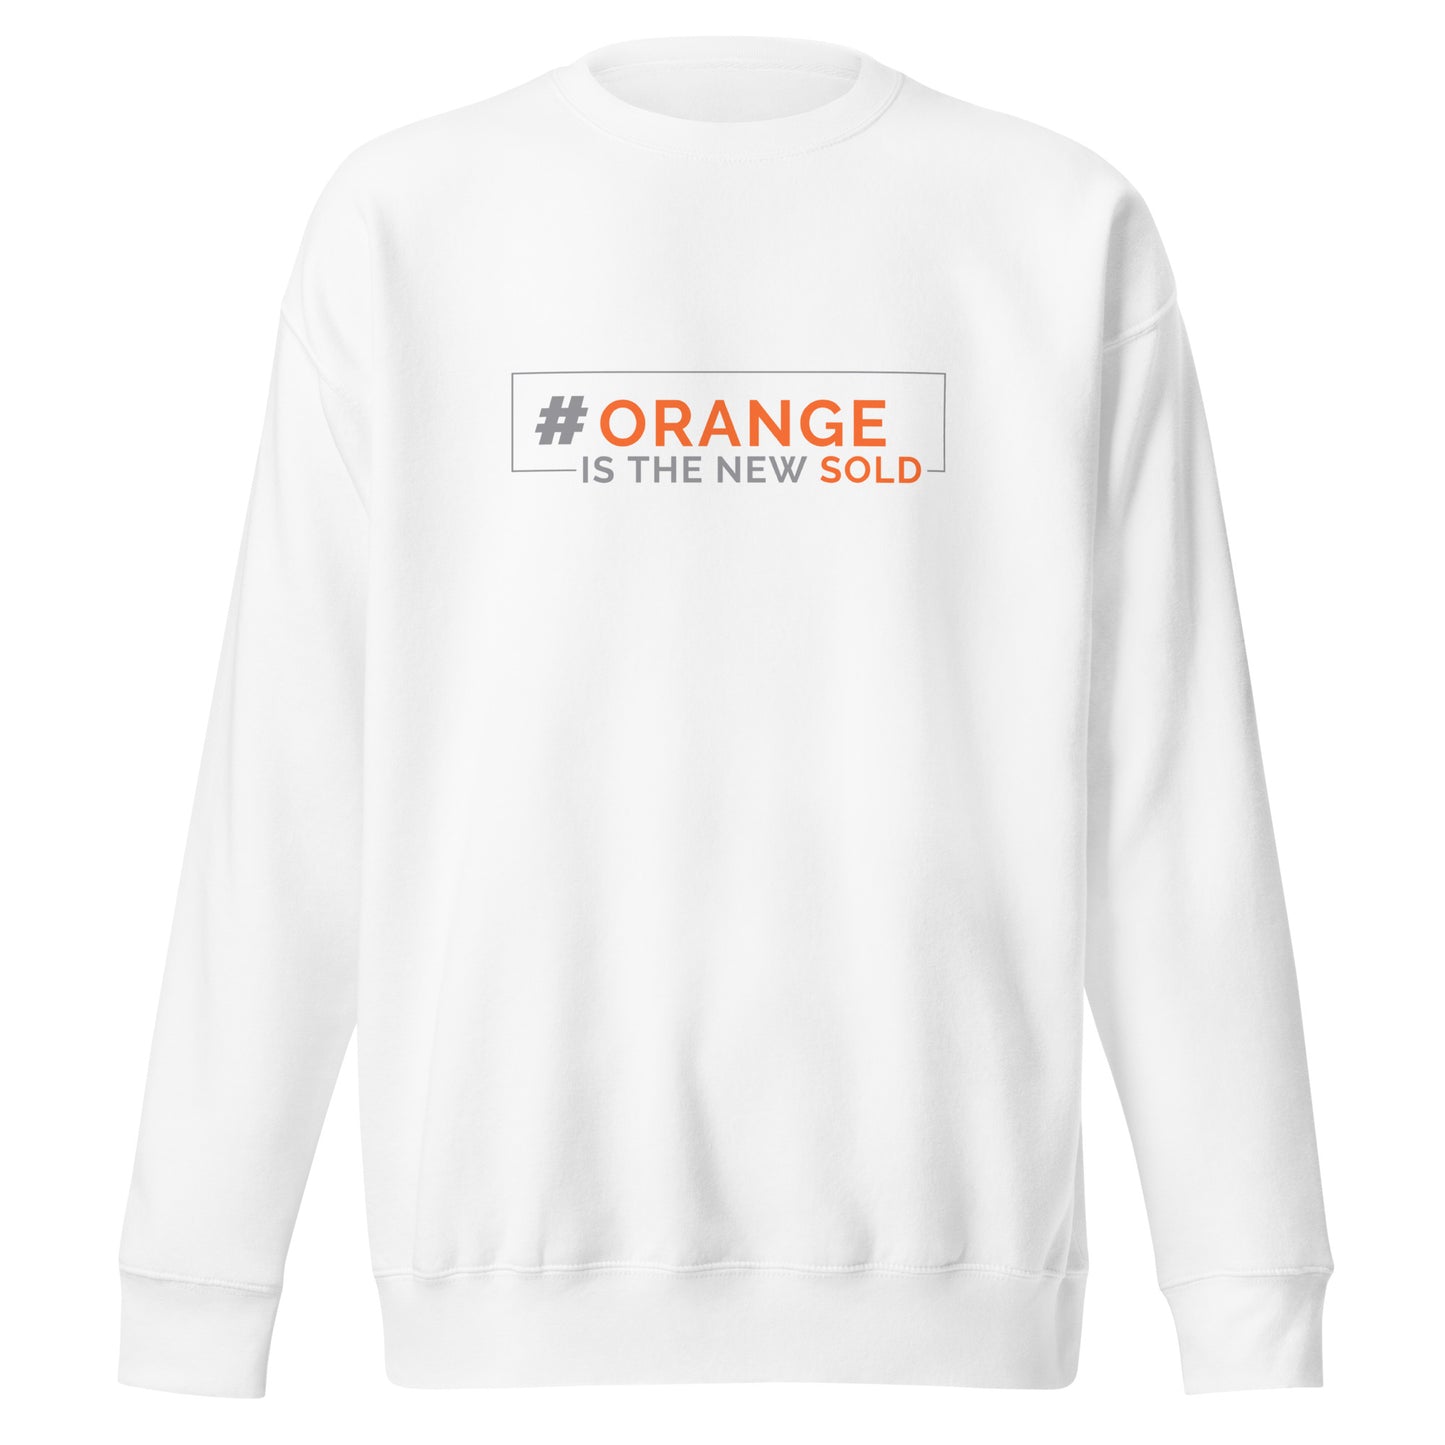 OrangeIsTheNewSOLD Unisex Premium Sweatshirt